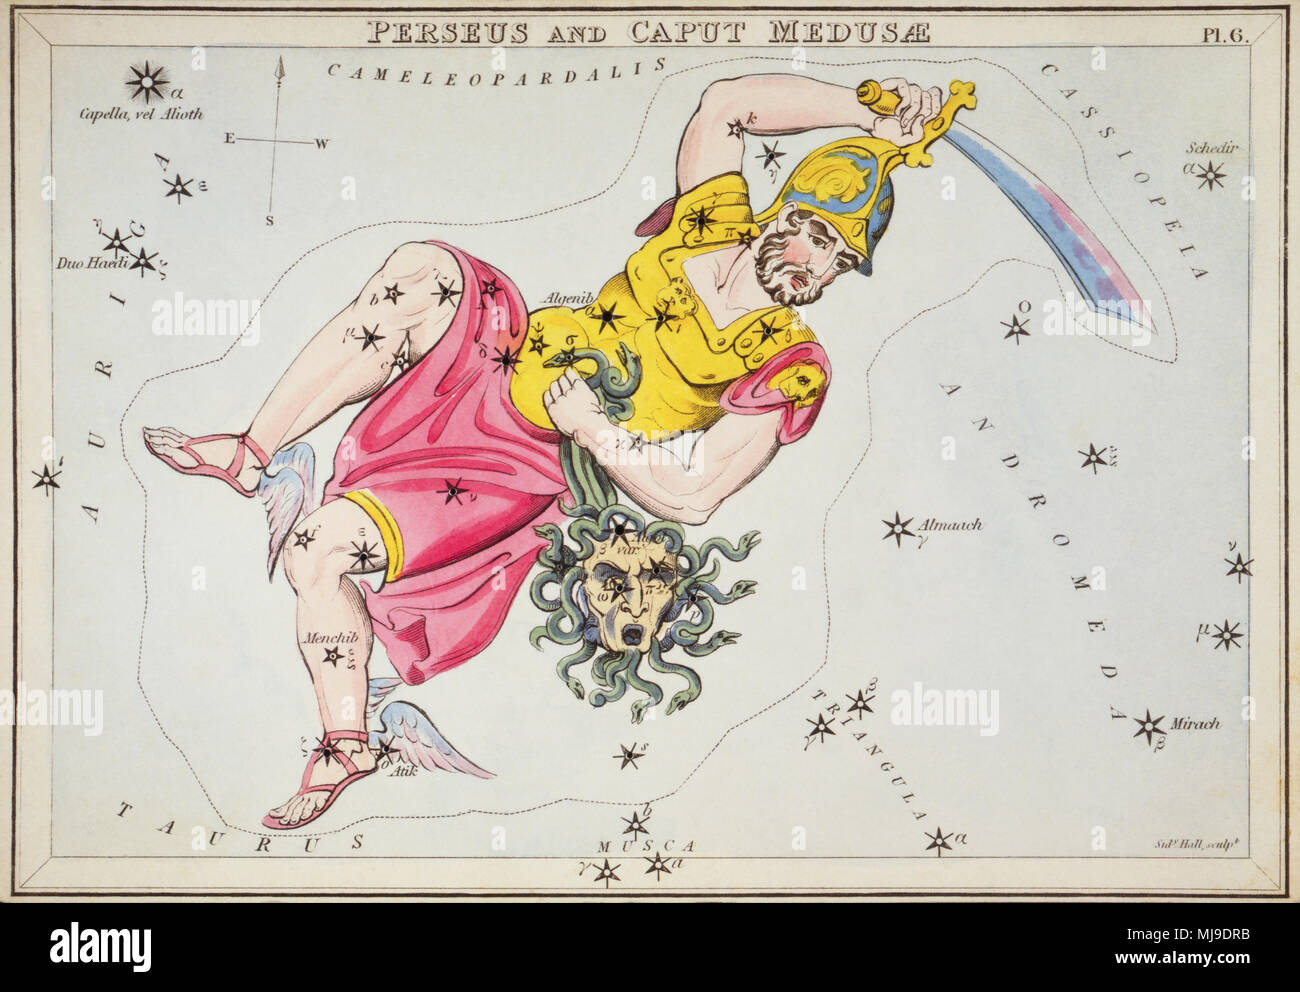 Perseus und Caput Medusae. Karte Nummer 6 von Urania's Mirror, oder einen Blick auf den Himmel, eines der 32 astronomischen Star Chart Karten von Sidney Hall graviert und publshed 1824. Stockfoto